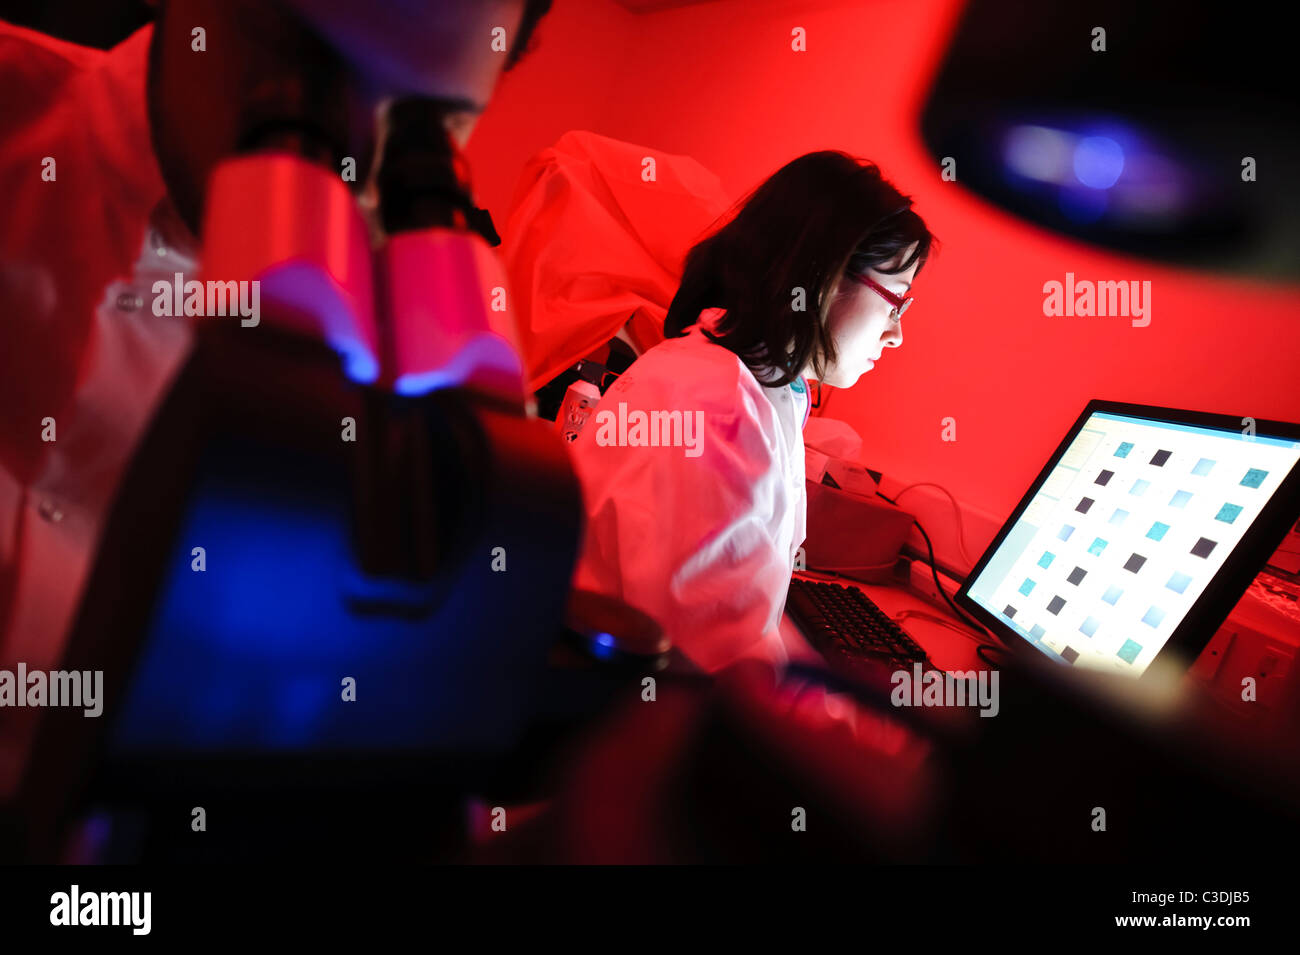 Maschio e femmina di scienziati in camera oscura della scienza con illuminazione rossa guardando giù microscopio con schermo di computer in background Foto Stock